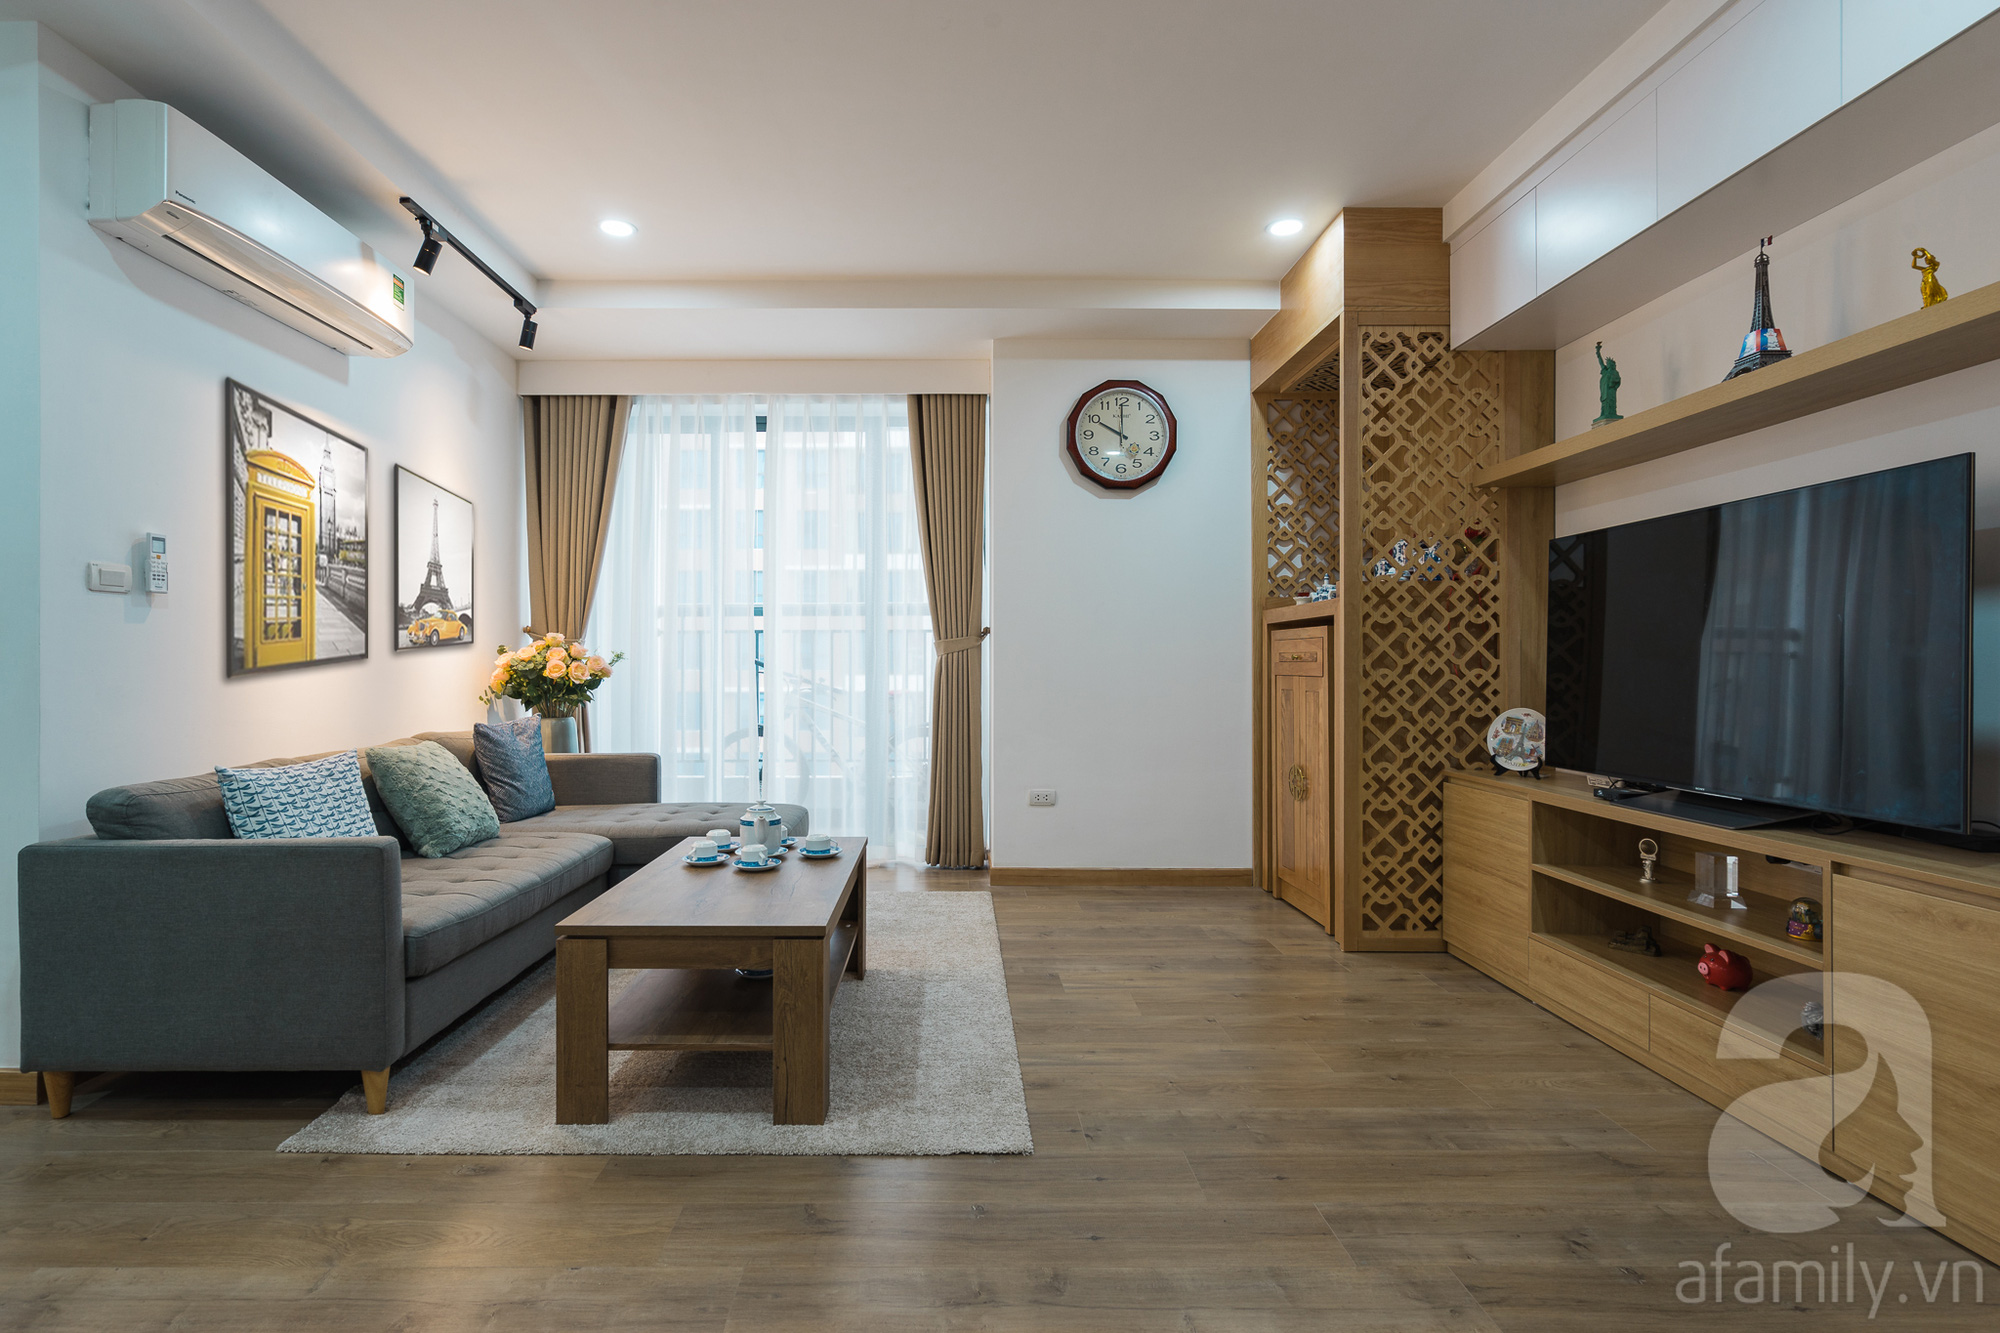 Tư vấn thiết kế căn hộ 110m2 với 3 phòng ngủ tiện nghi ở chung cư Ecolife, Tây Hồ với chi phí hoàn thiện nội thất 290 triệu - Ảnh 9.